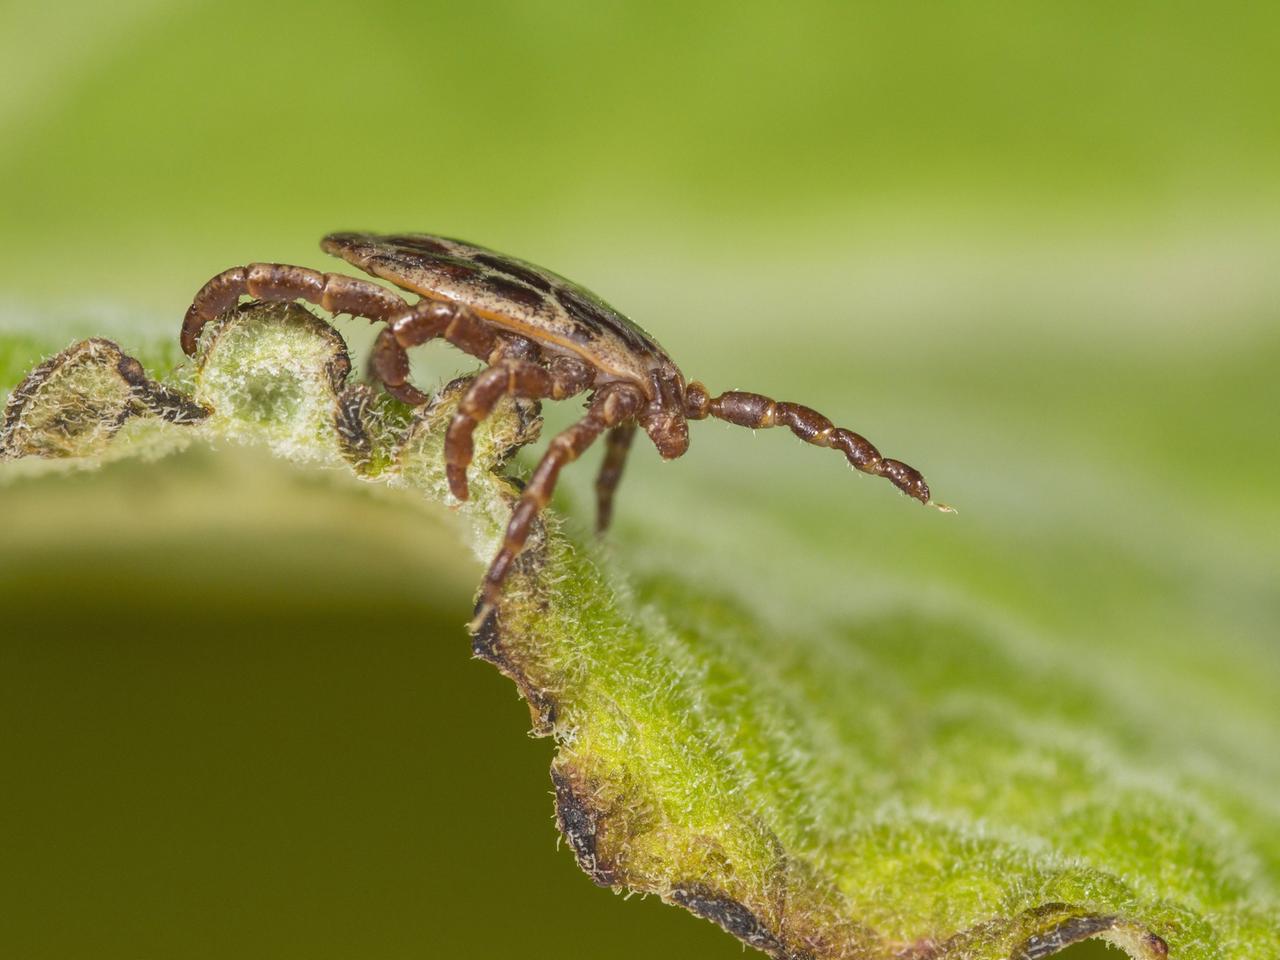 Eine männliche Auwaldzecke (Dermacentor reticulatus) in Seitenansicht sitzt auf einem Blatt.